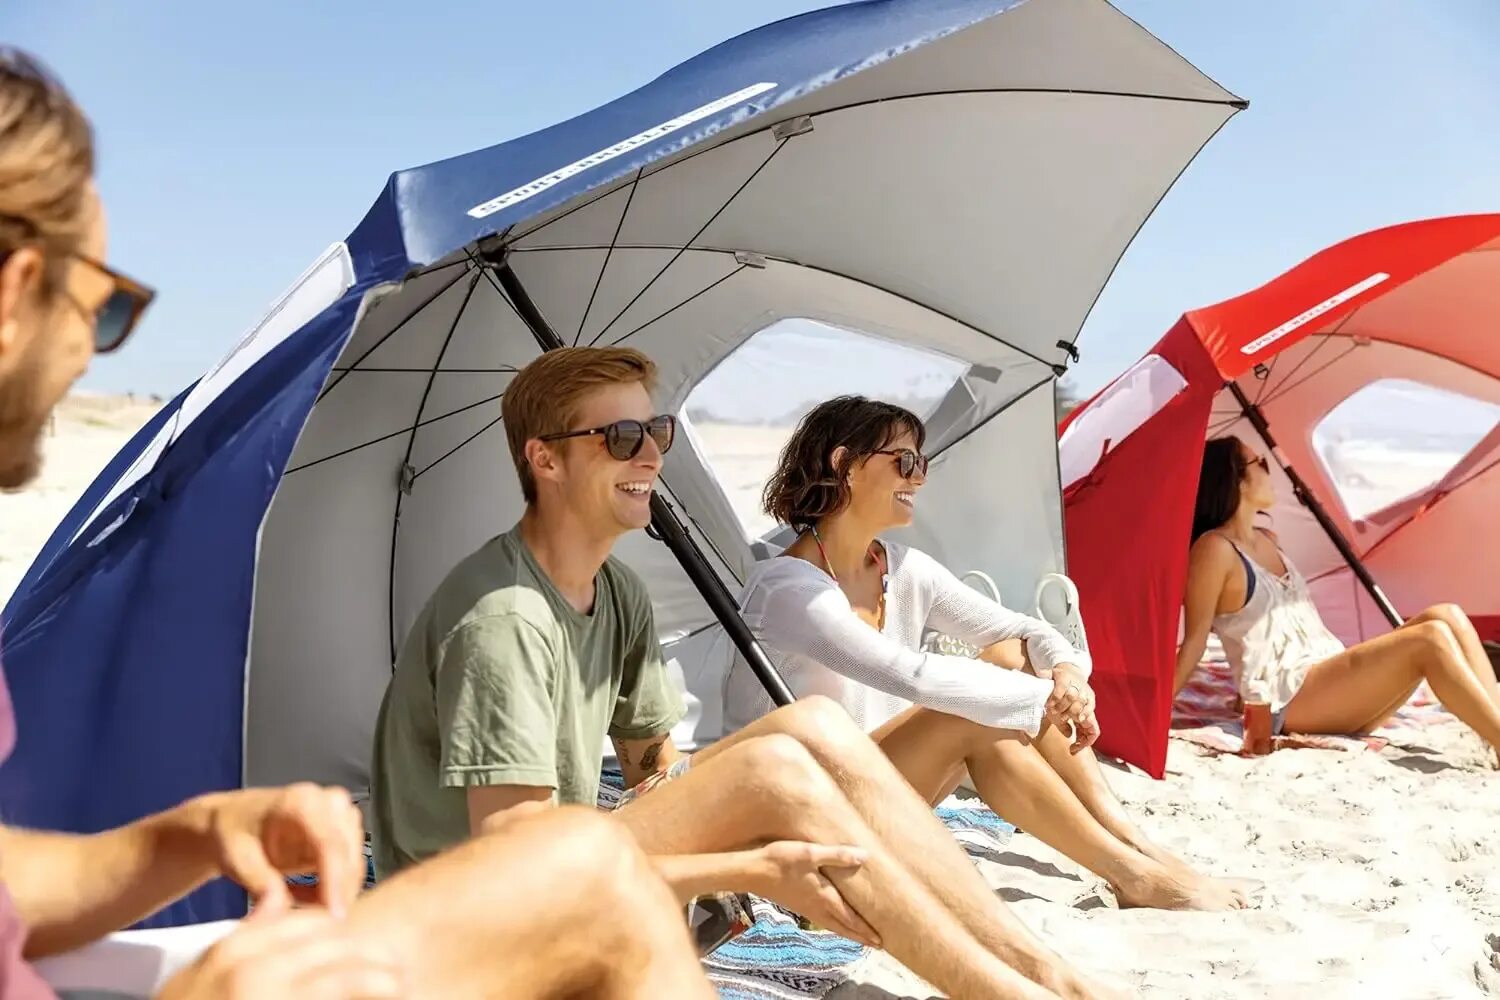 Купить пляжный зонт от солнца. Зонт Sport-Brella. Зонт от солнца пляжный. Зонт от солнца пляжный большой. Фотосессия с зонтом от солнца.